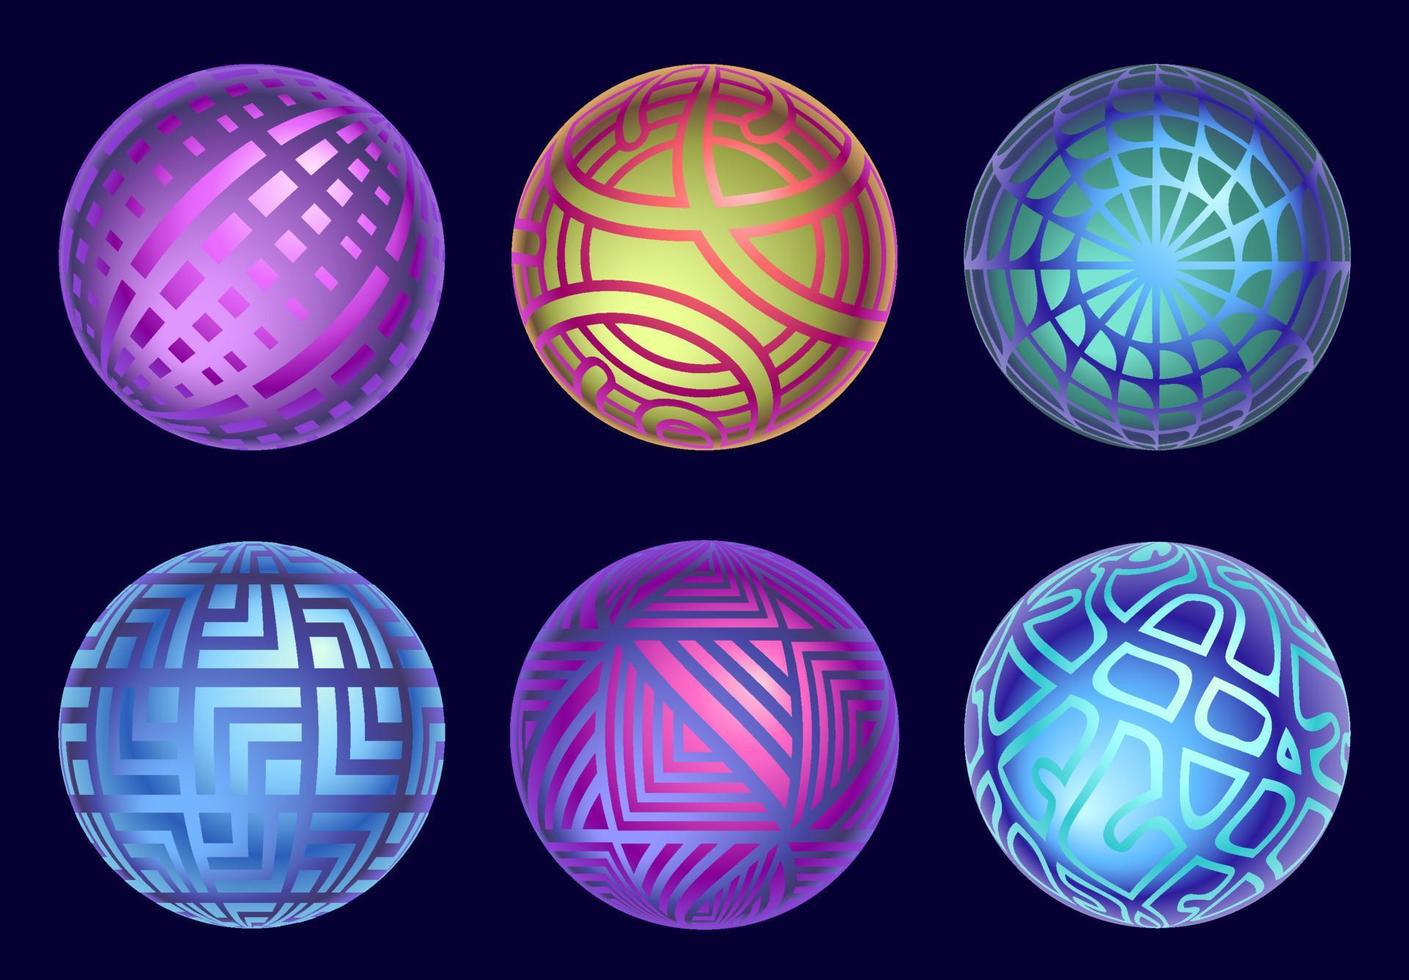 coleção de esferas mágicas. conjunto de bolas de vetor místico isoladas em fundo escuro. esferas mágicas misteriosas abstratas nas cores amarelas, azuis e roxas.